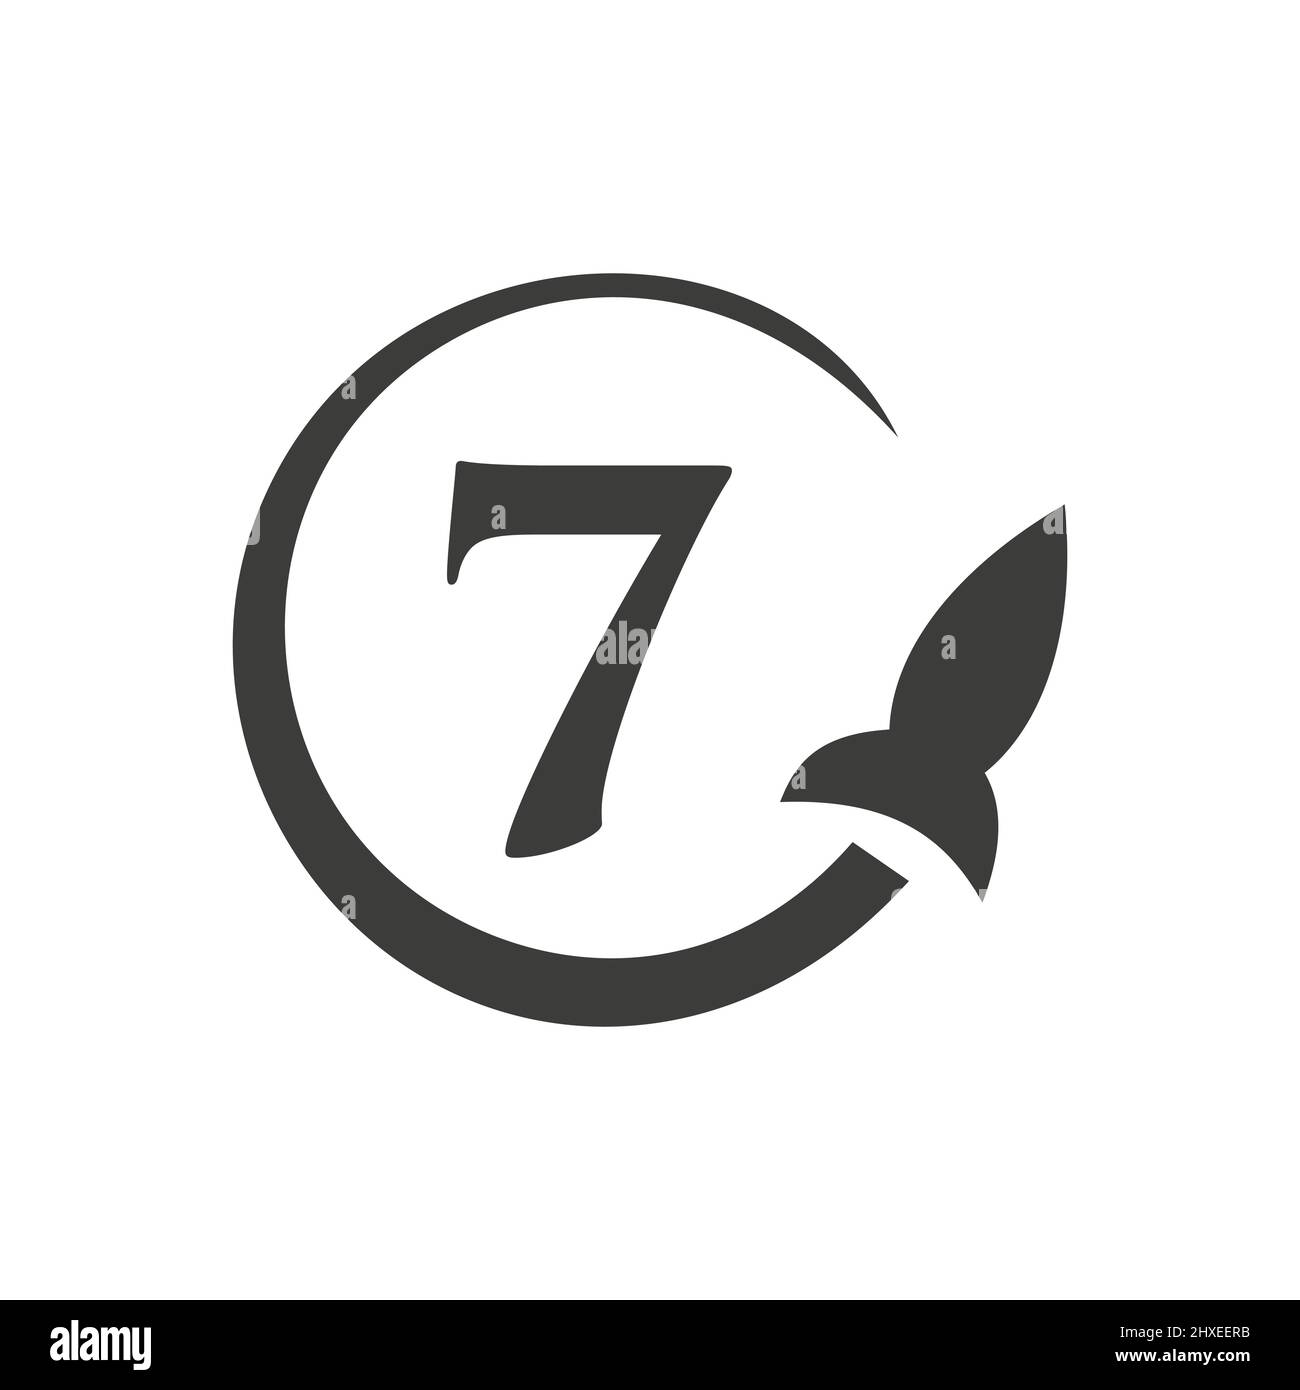 Travel Logo On Letter 7 Concept. Letter 7 Travel Logo Vector Template Stock Vector